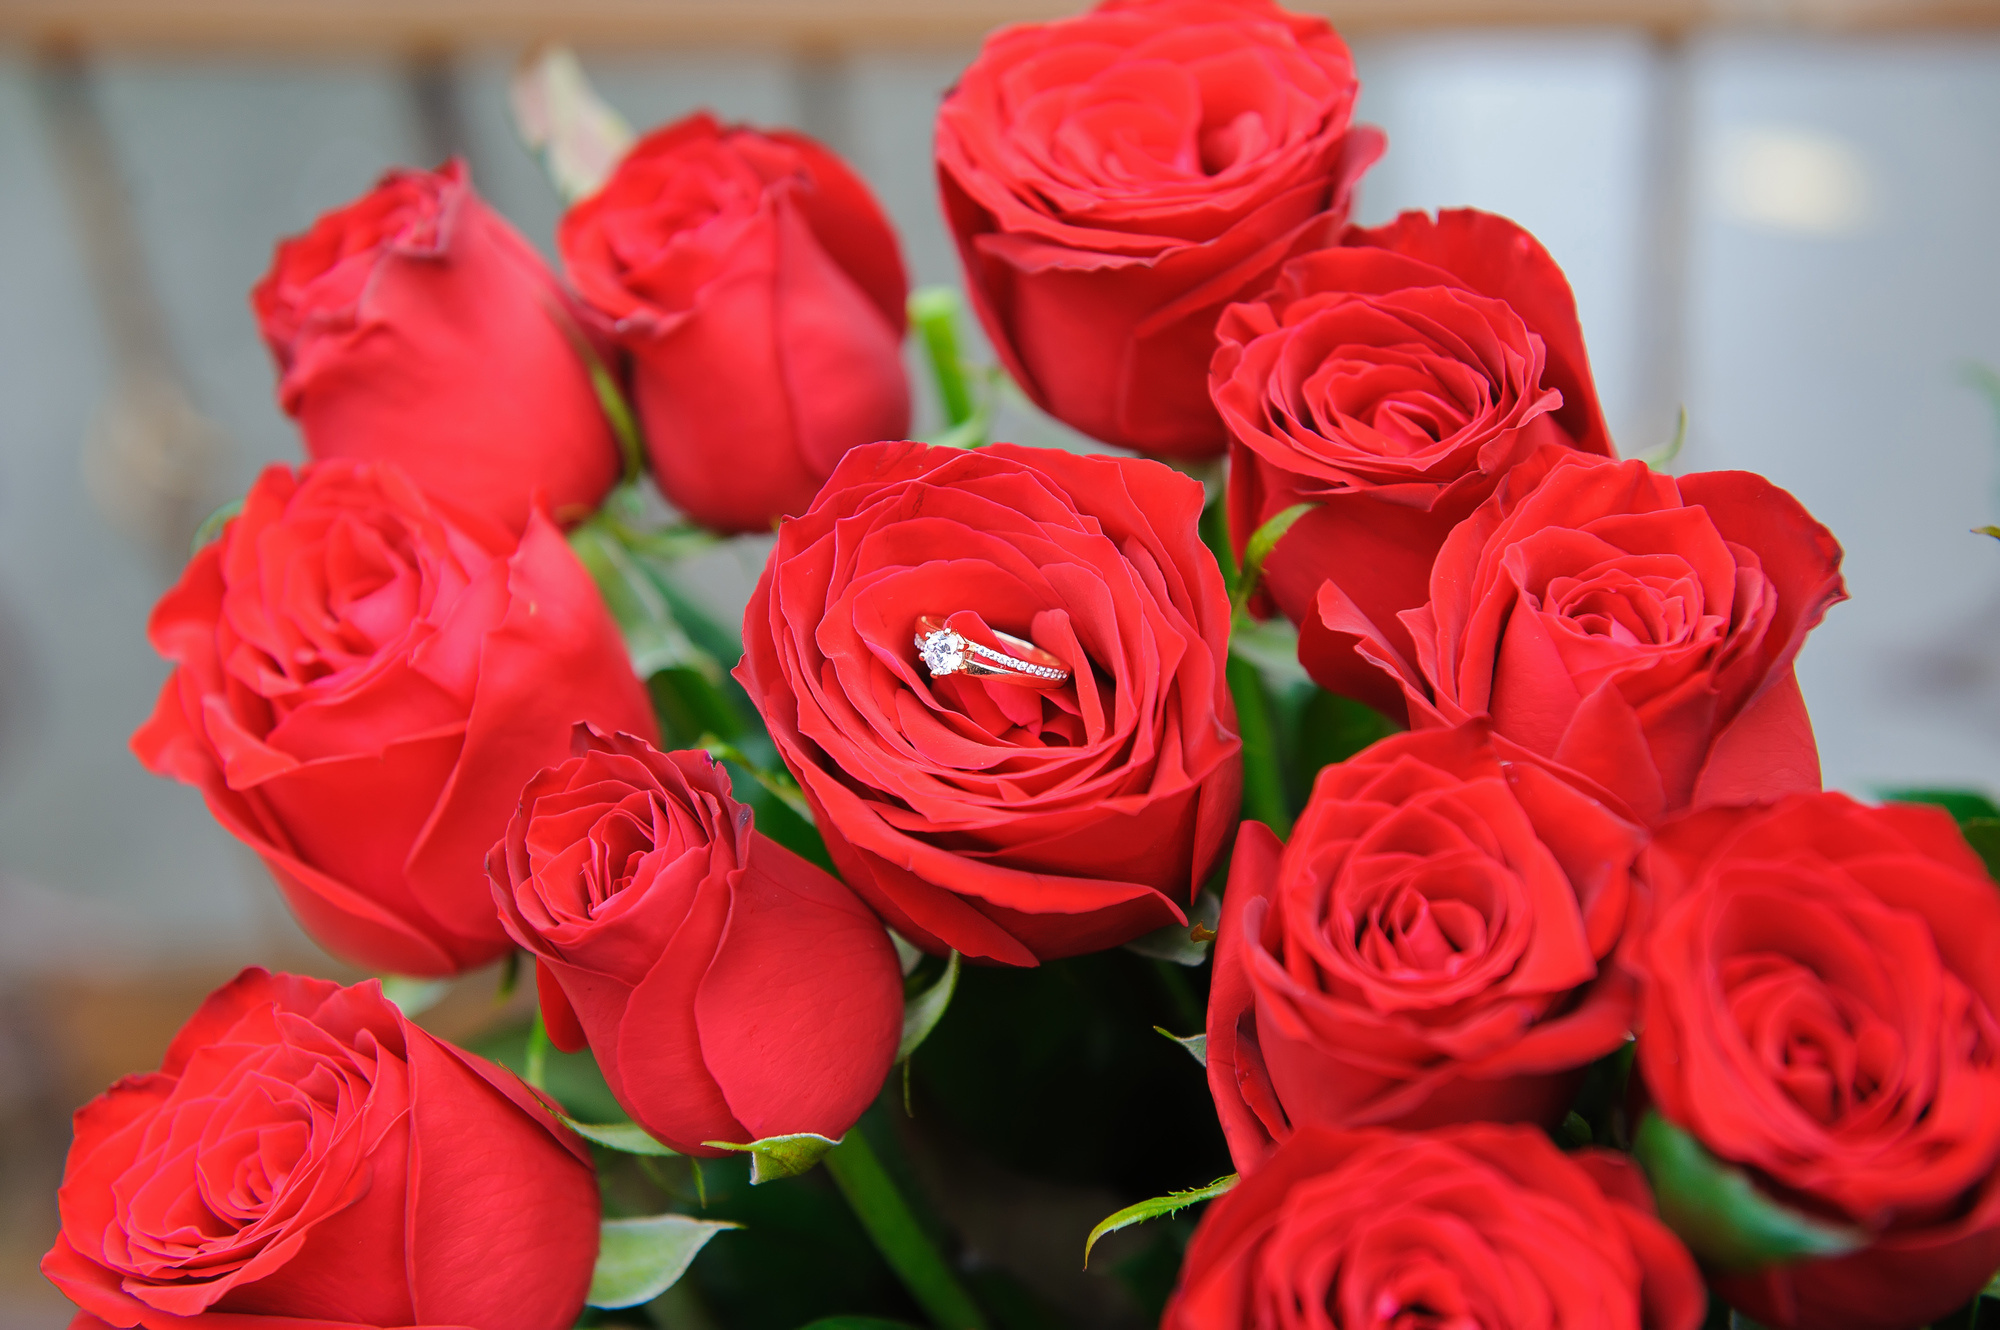 バラの花束は何本 プロポーズにピッタリな花言葉とは プロポーズ準備室 最高のプロポーズを知って相談できるサイト